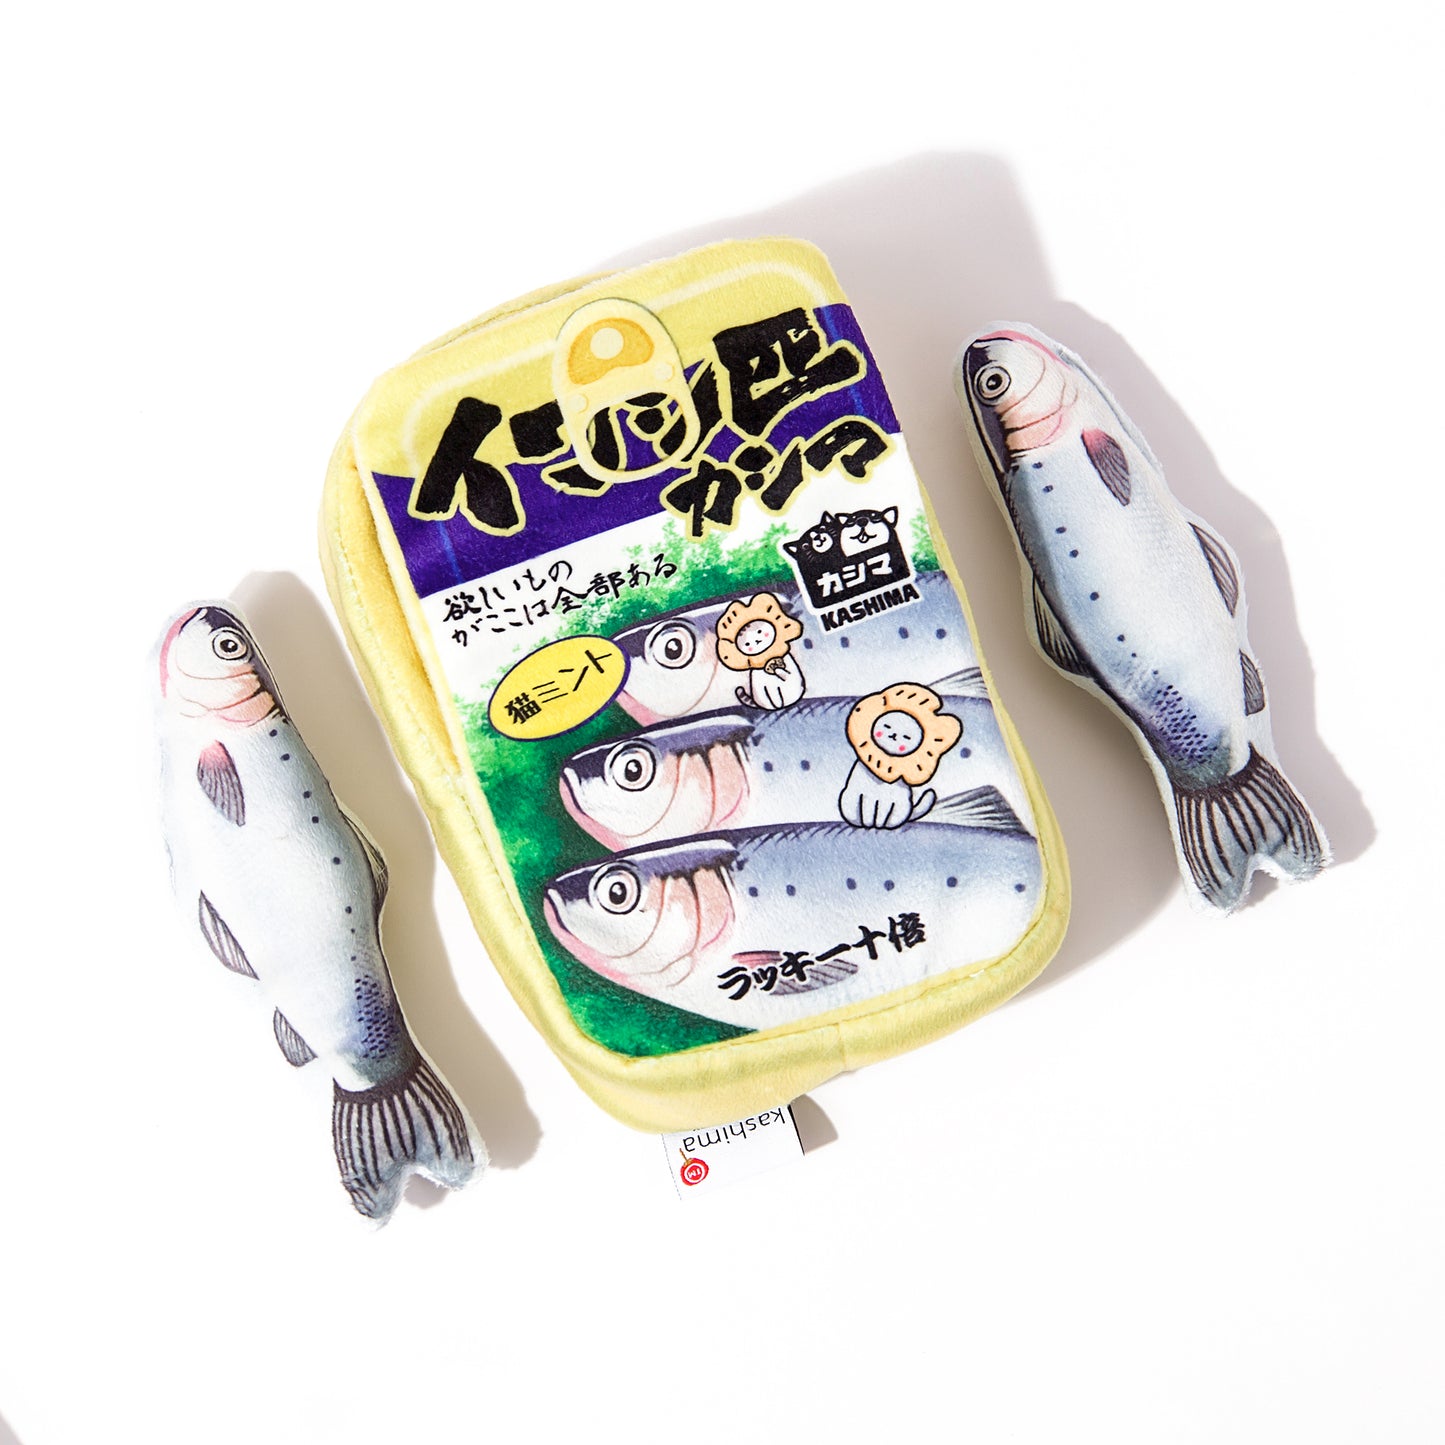 Kashima Canned Sardines Shaped Toy